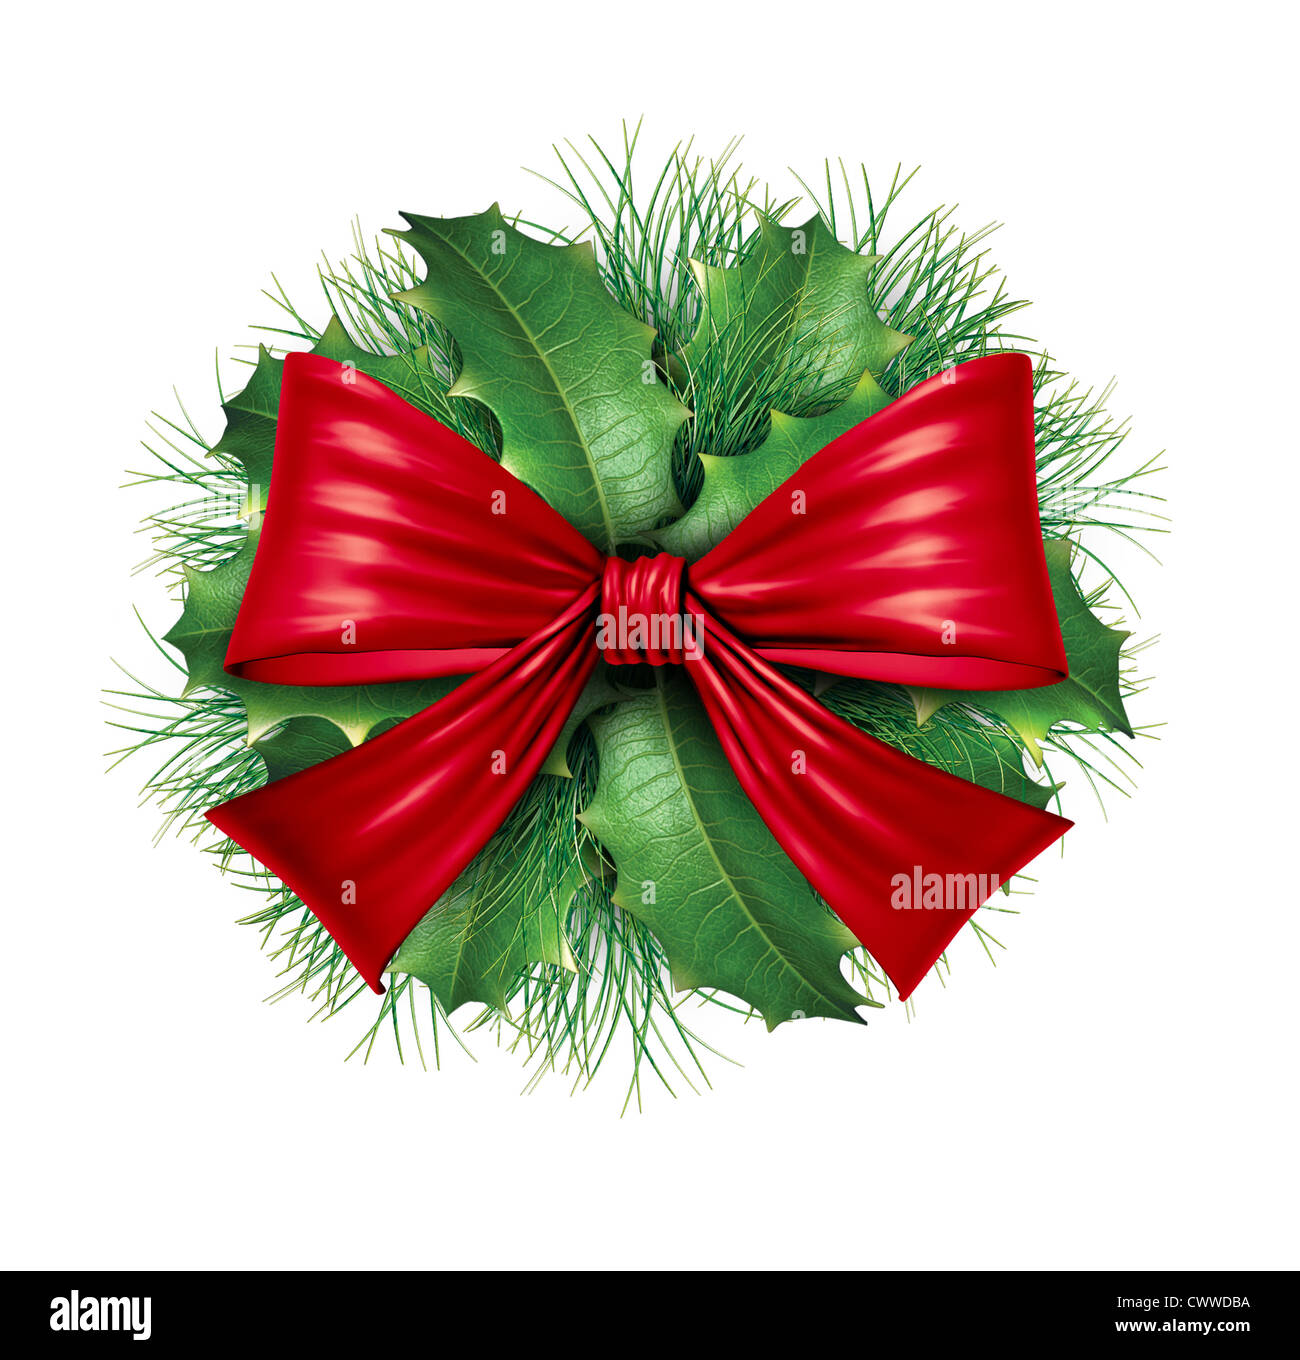 Di seta rossa con arco circolare di pino ornamentali decorazione di vacanza per Natale festosa celebrazione invernale su uno sfondo bianco. Foto Stock